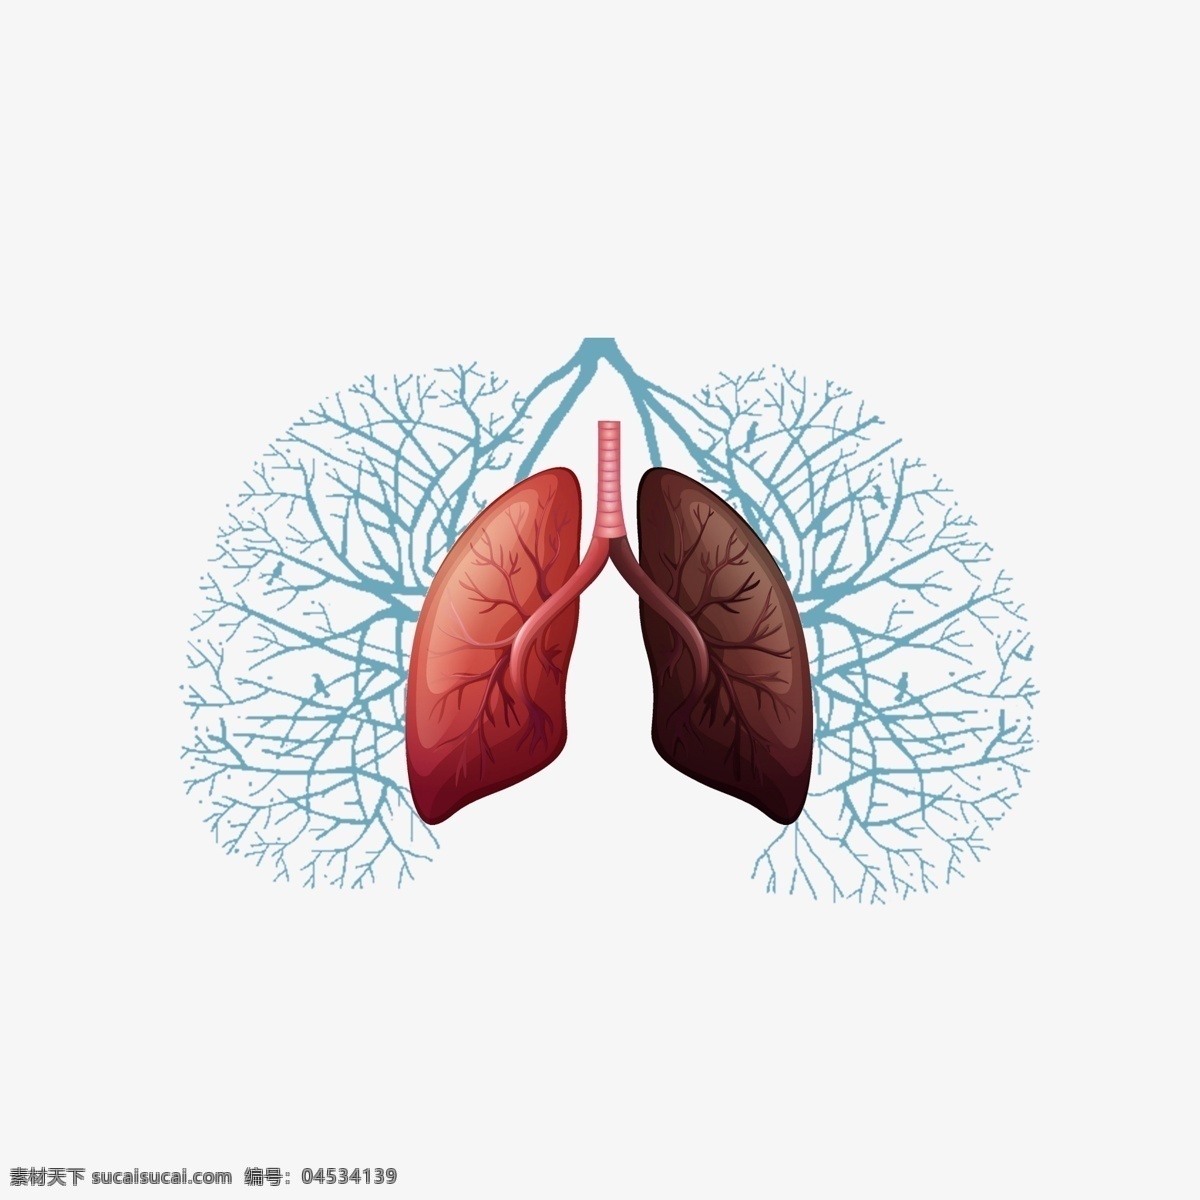 肺部插画图片 肺部插画 肺部 健康 插画 psd素材 源文件